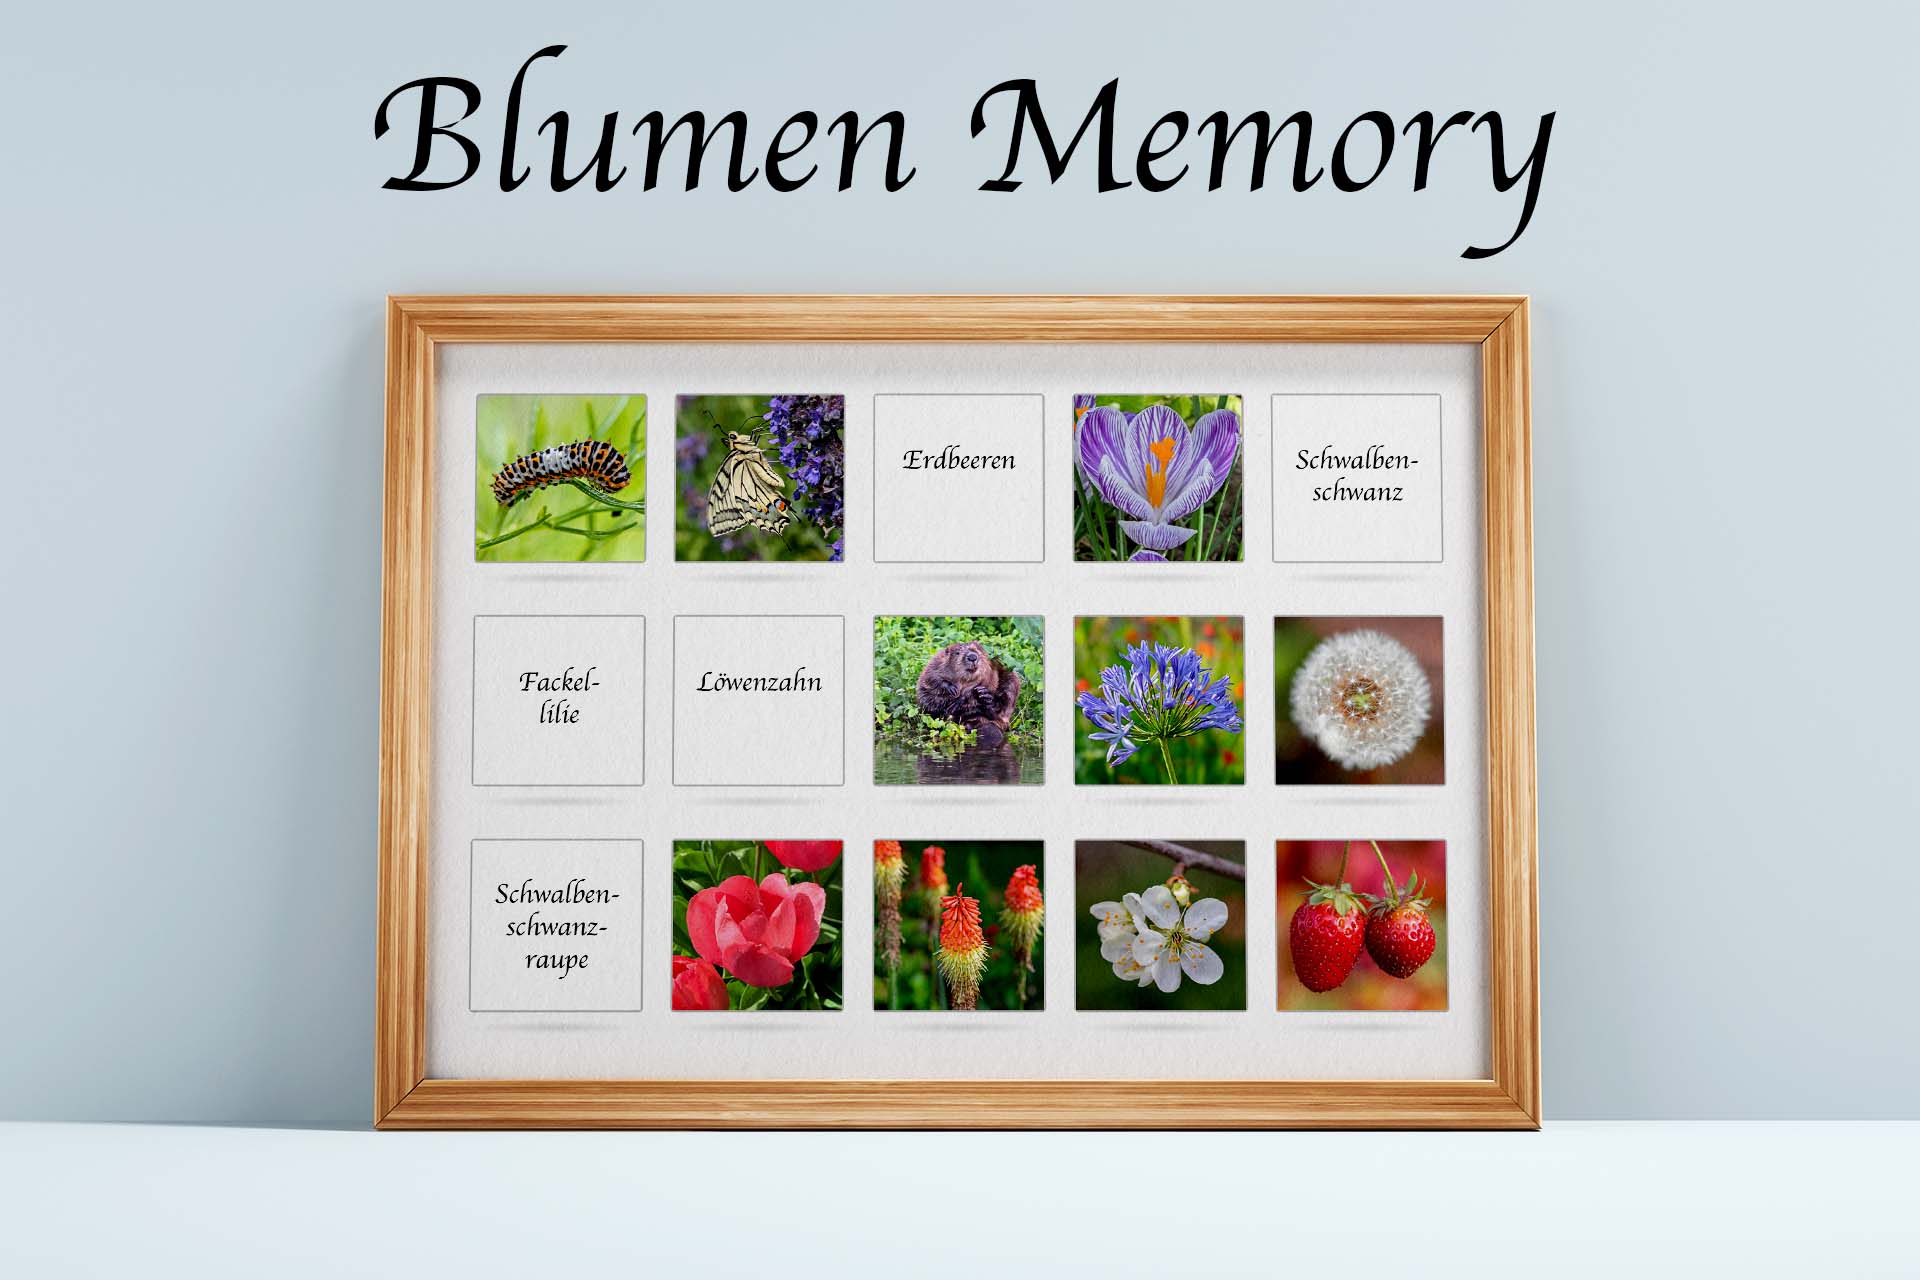 Spiel unsere Blumen-Memory. Endloser Spielspass. Jetzt neu: Edition 2023 mit einem neuen Blumenquiz und neuen Karten.